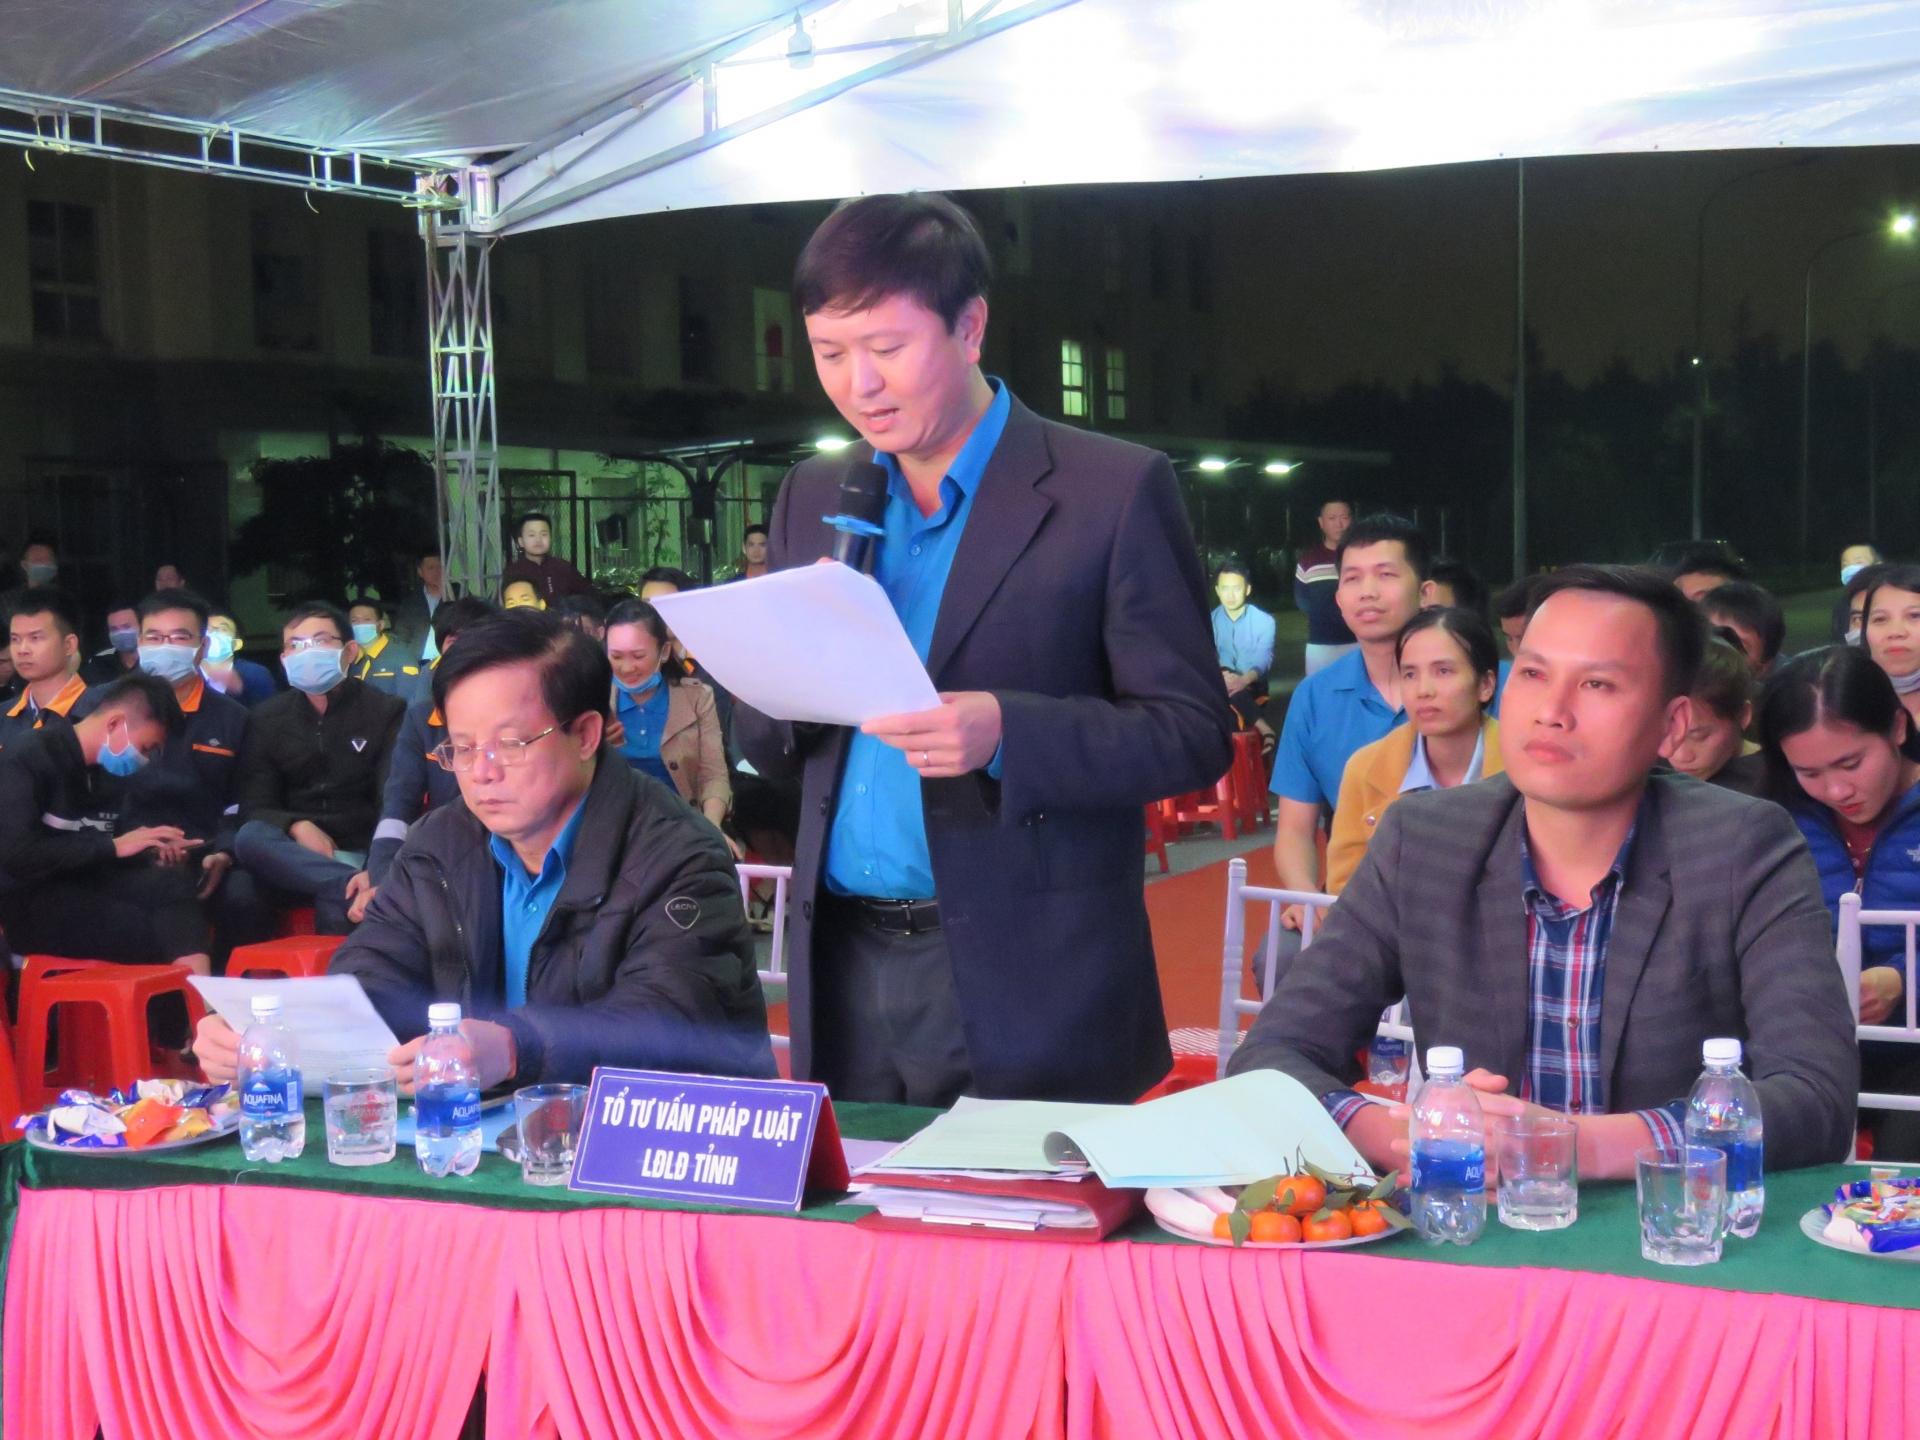 Sôi nổi chương trình truyền thông pháp luật cho CNLĐ Công ty Gang thép Hưng nghiệp Formosa Hà Tĩnh